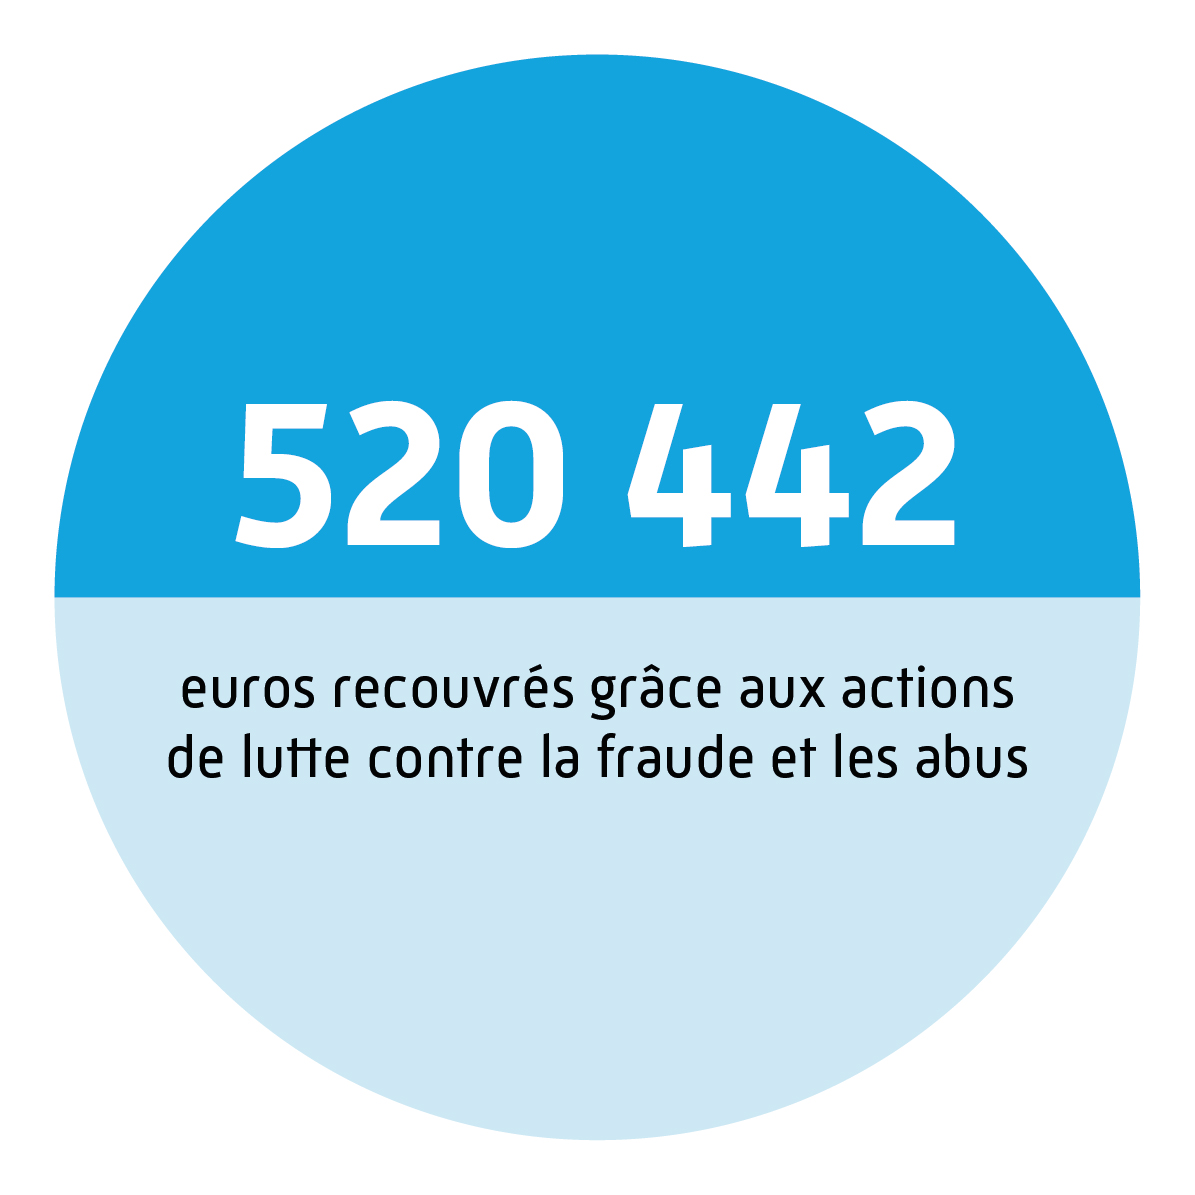 520 442 euros recouvrés grâce aux actions de lutte contre la fraude et les abus.